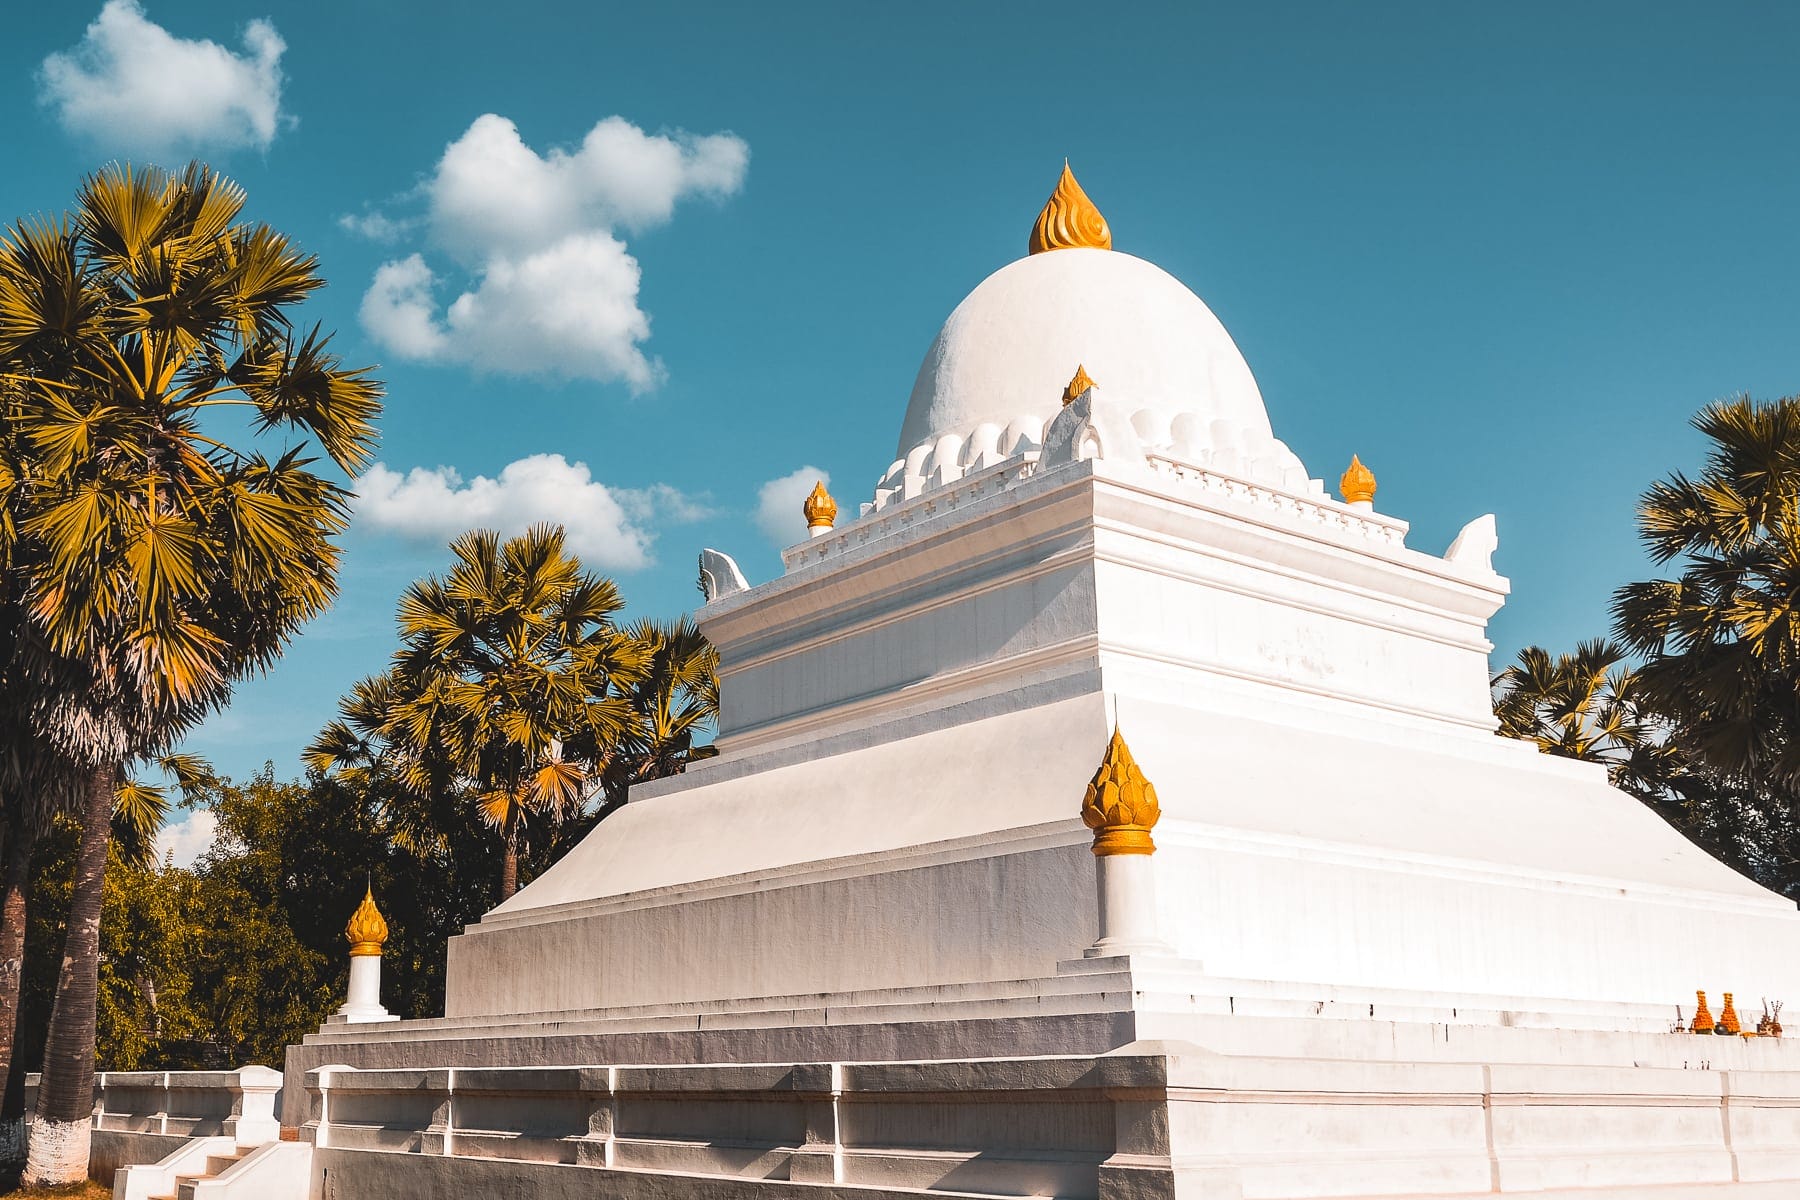 Luang Prabang Reisetipps in Laos: Das musst du sehen und entdecken